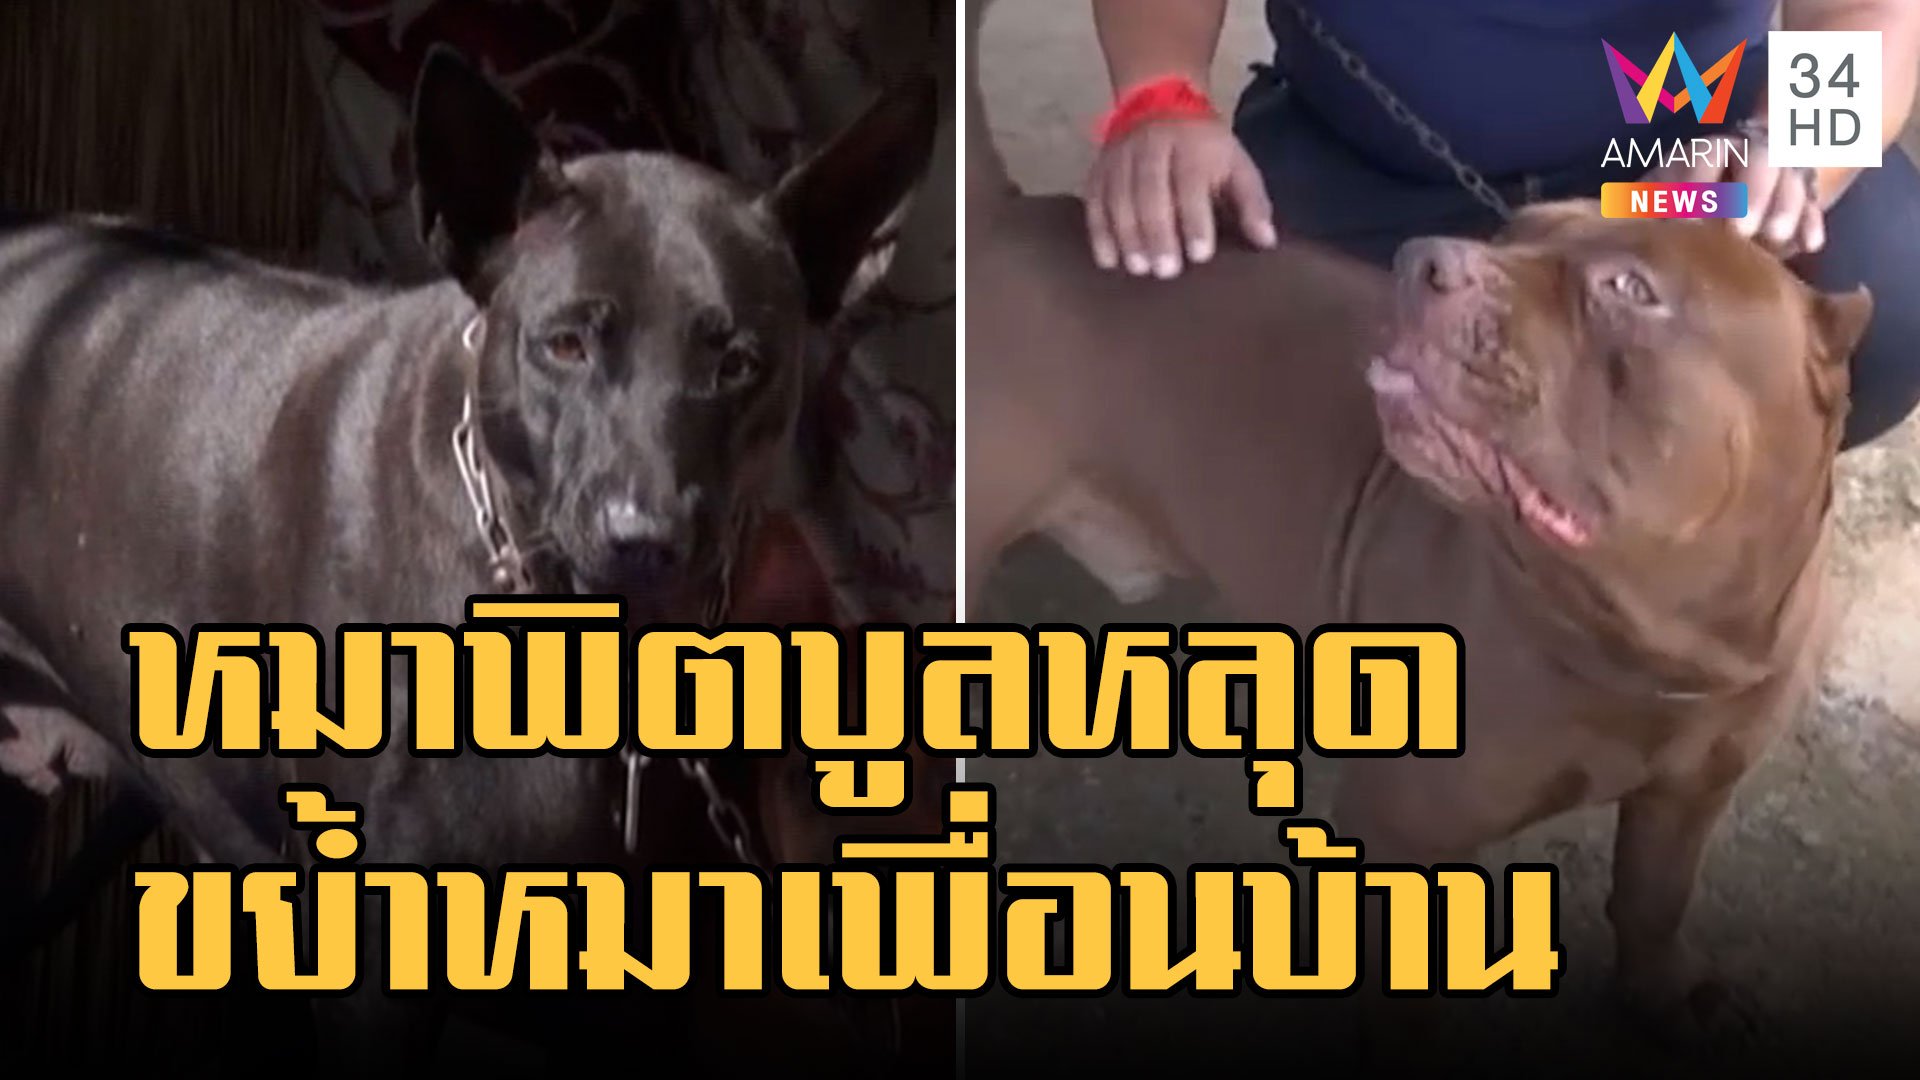 หมาพิตบูลหลุดขย้ำหมาเพื่อนบ้านเจ็บ เจ้าของโมโหเปิดก้นโชว์  | ข่าวเที่ยงอมรินทร์ | 16 พ.ย. 65 | AMARIN TVHD34